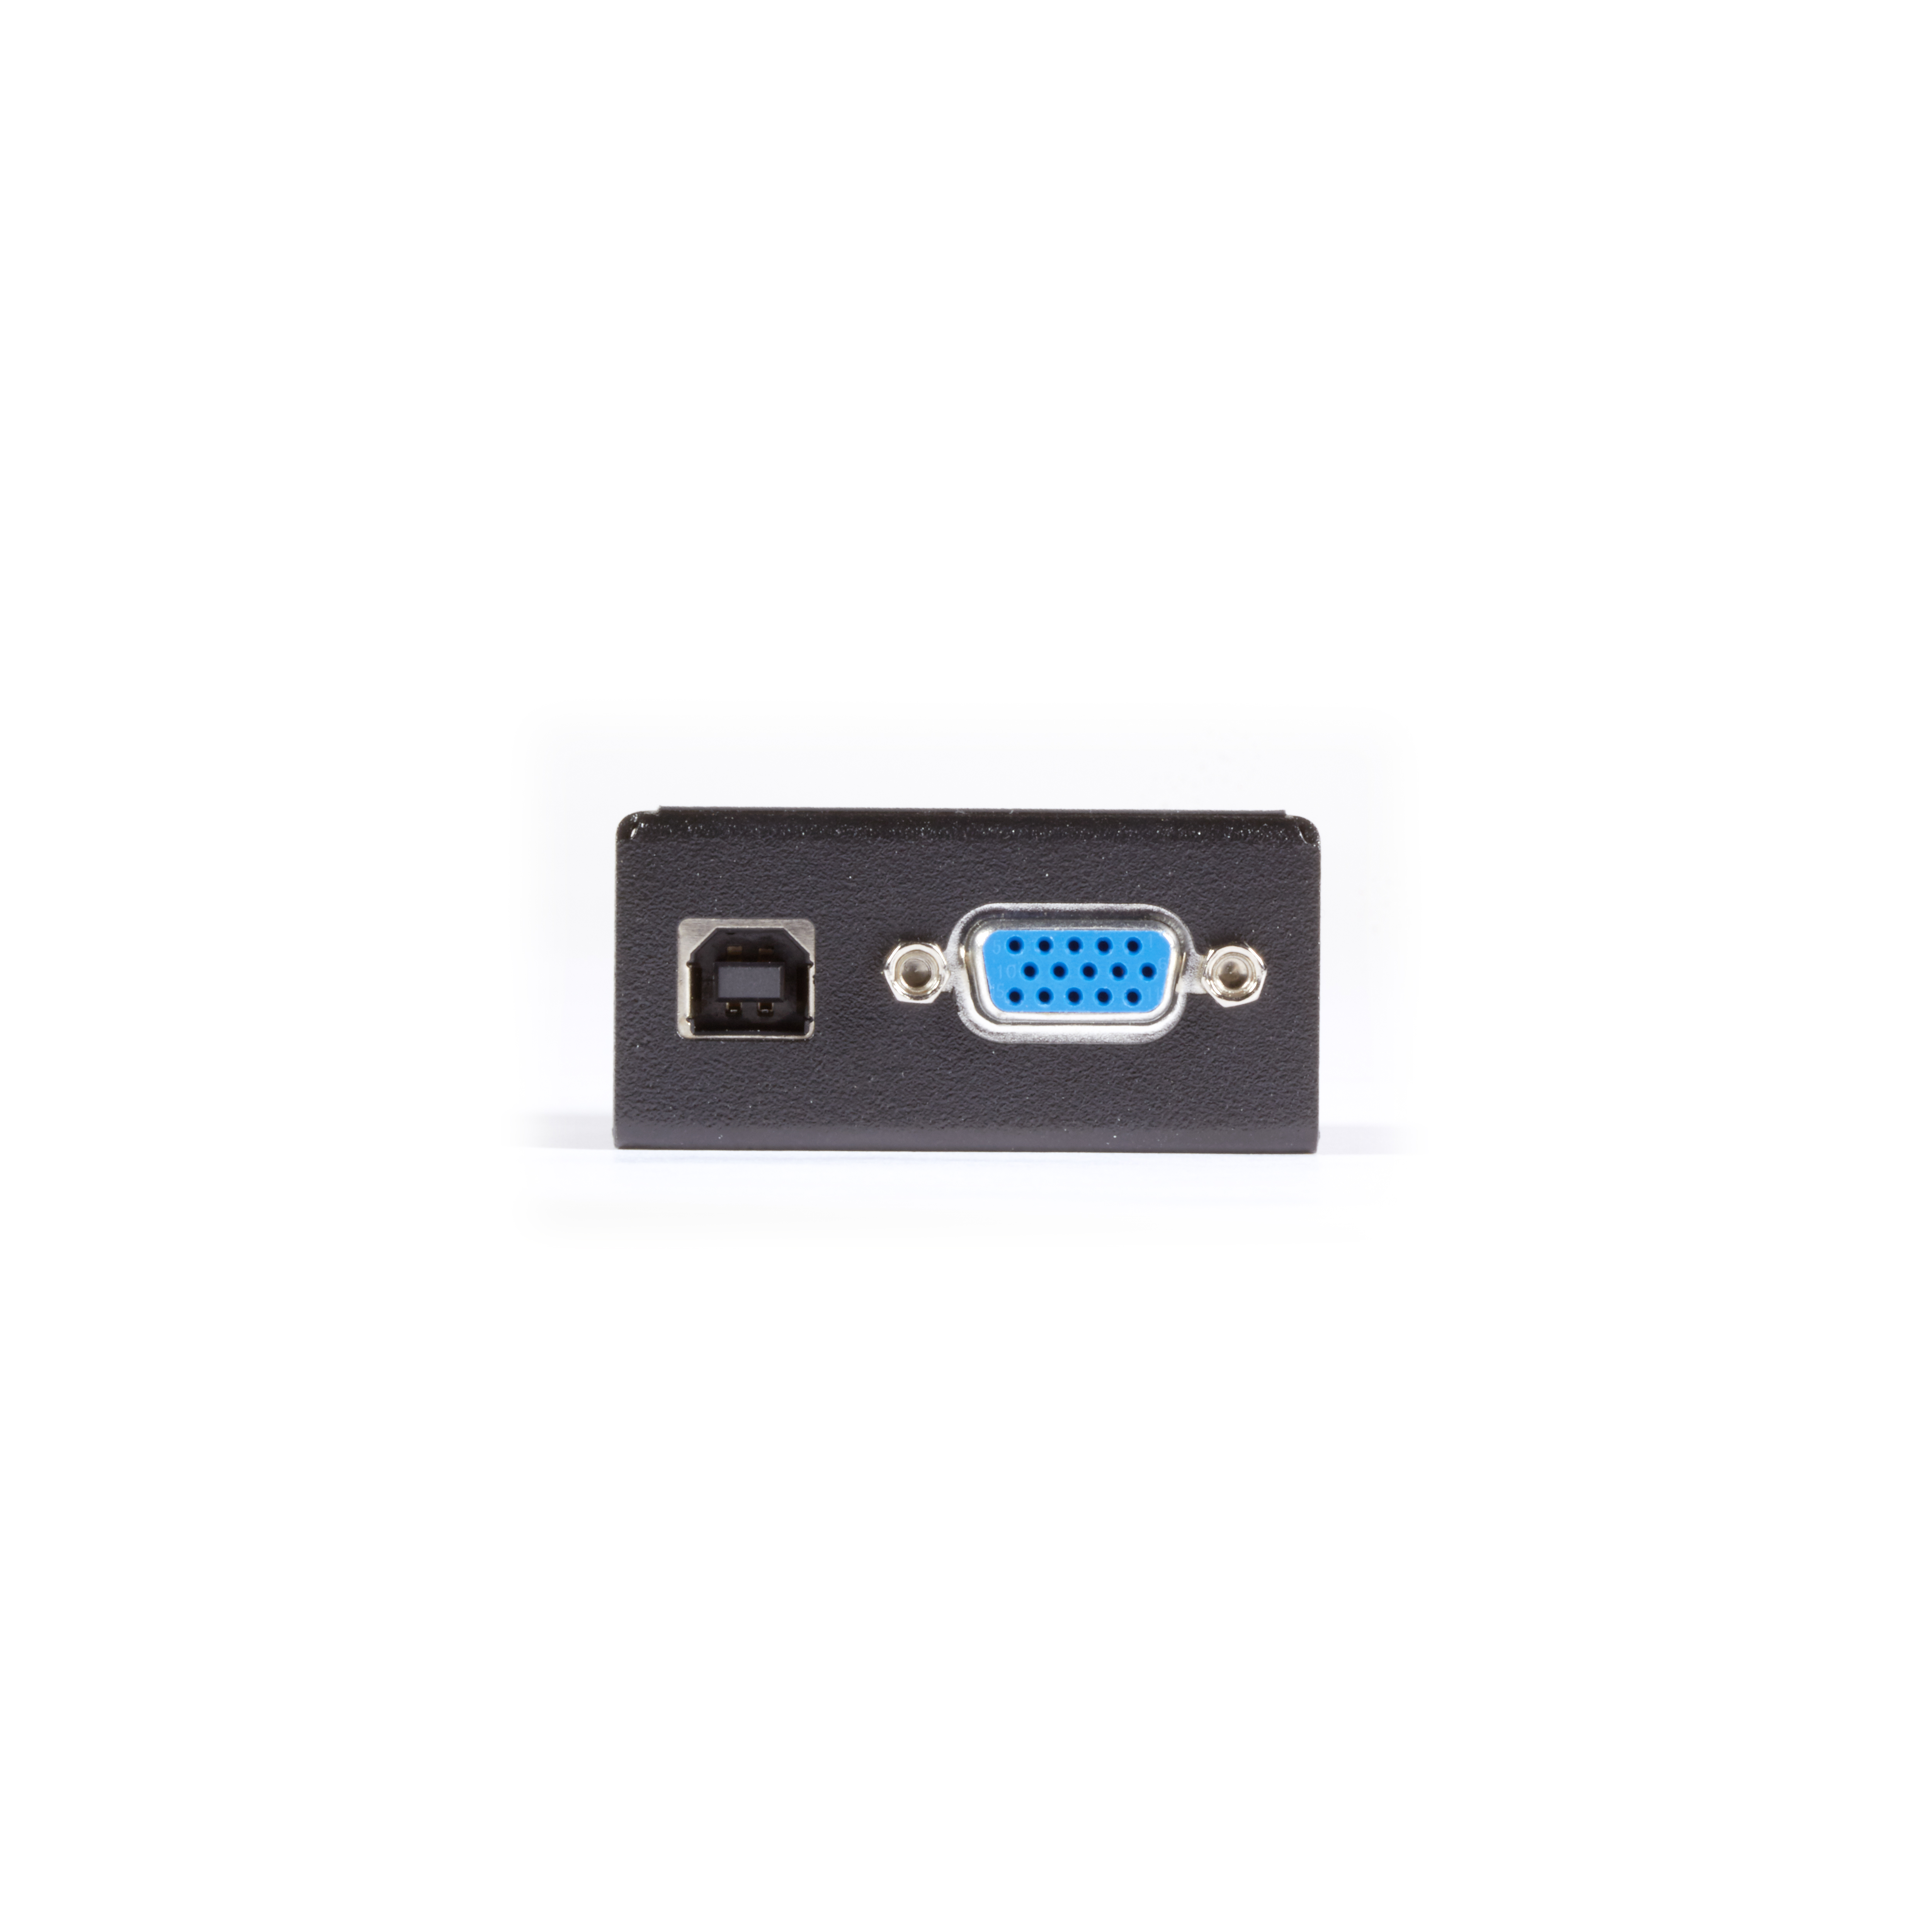 USB Powered Black Box Network Services KVGA-DVID VGA to Dvi-D Video Converter for KVM